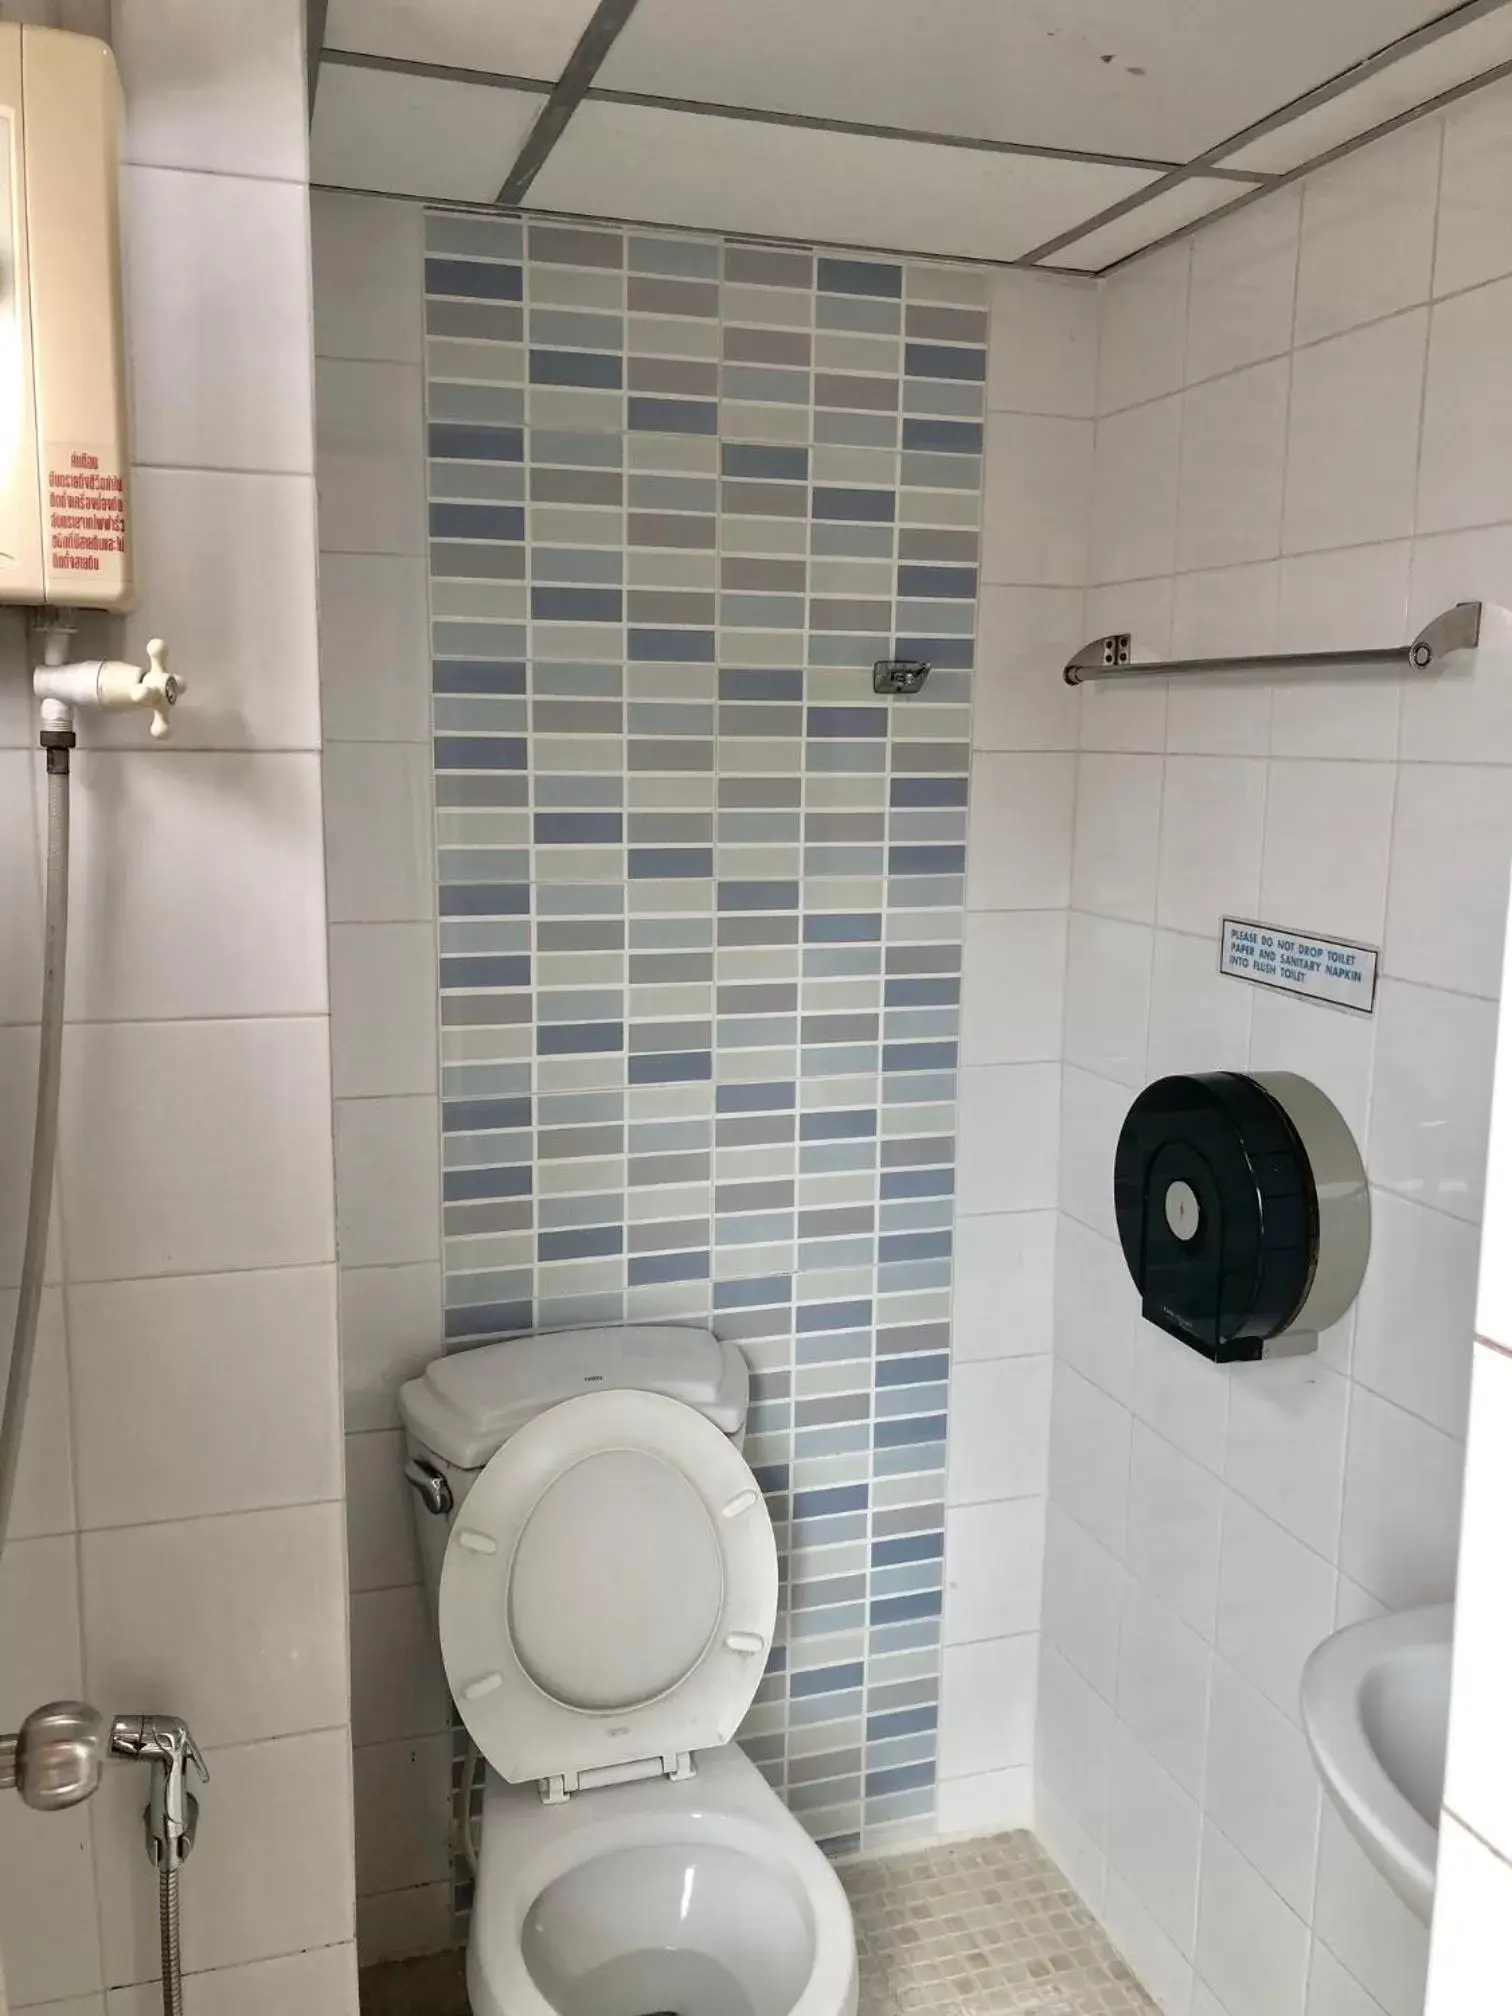 Bathroom in Khaosan Art Hotel - SHA Plus Certified